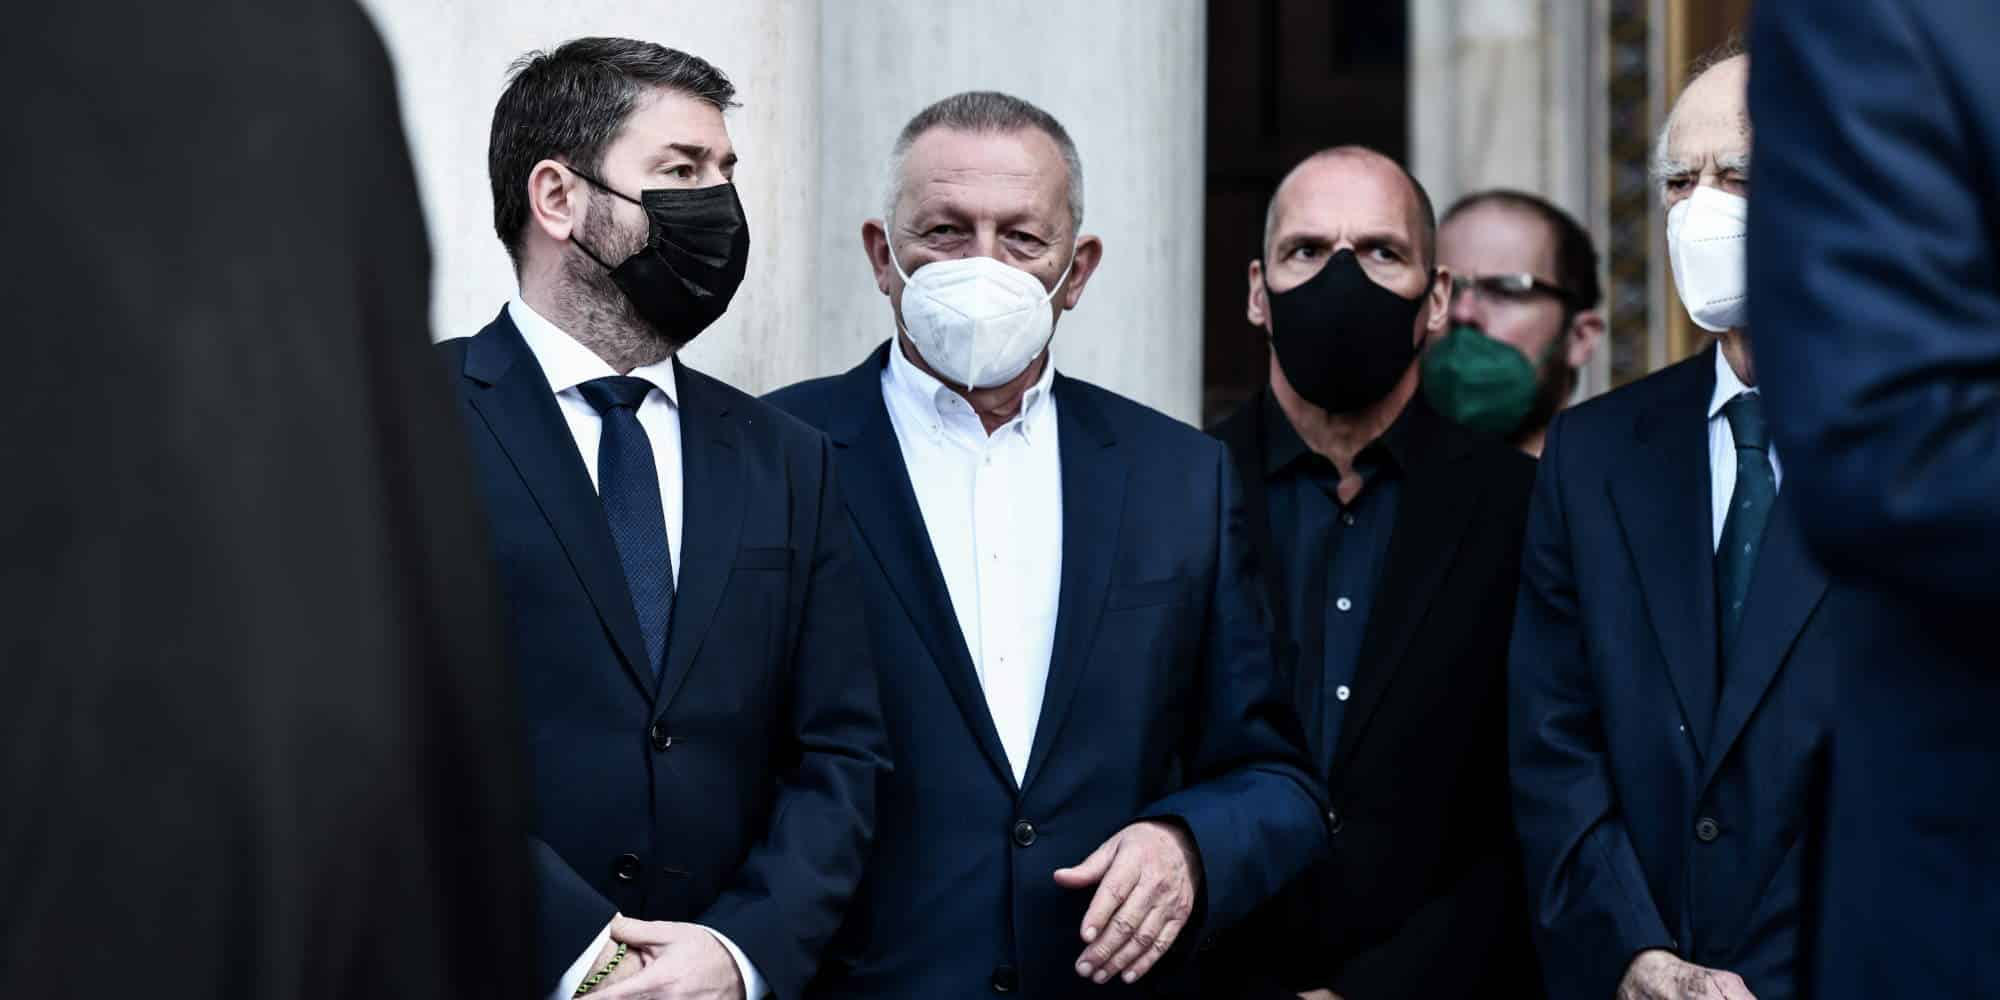 Ο Νίκος Ανδρουλάκης και ο Γιάνης Βαρουφάκης με μάσκα προστασίας